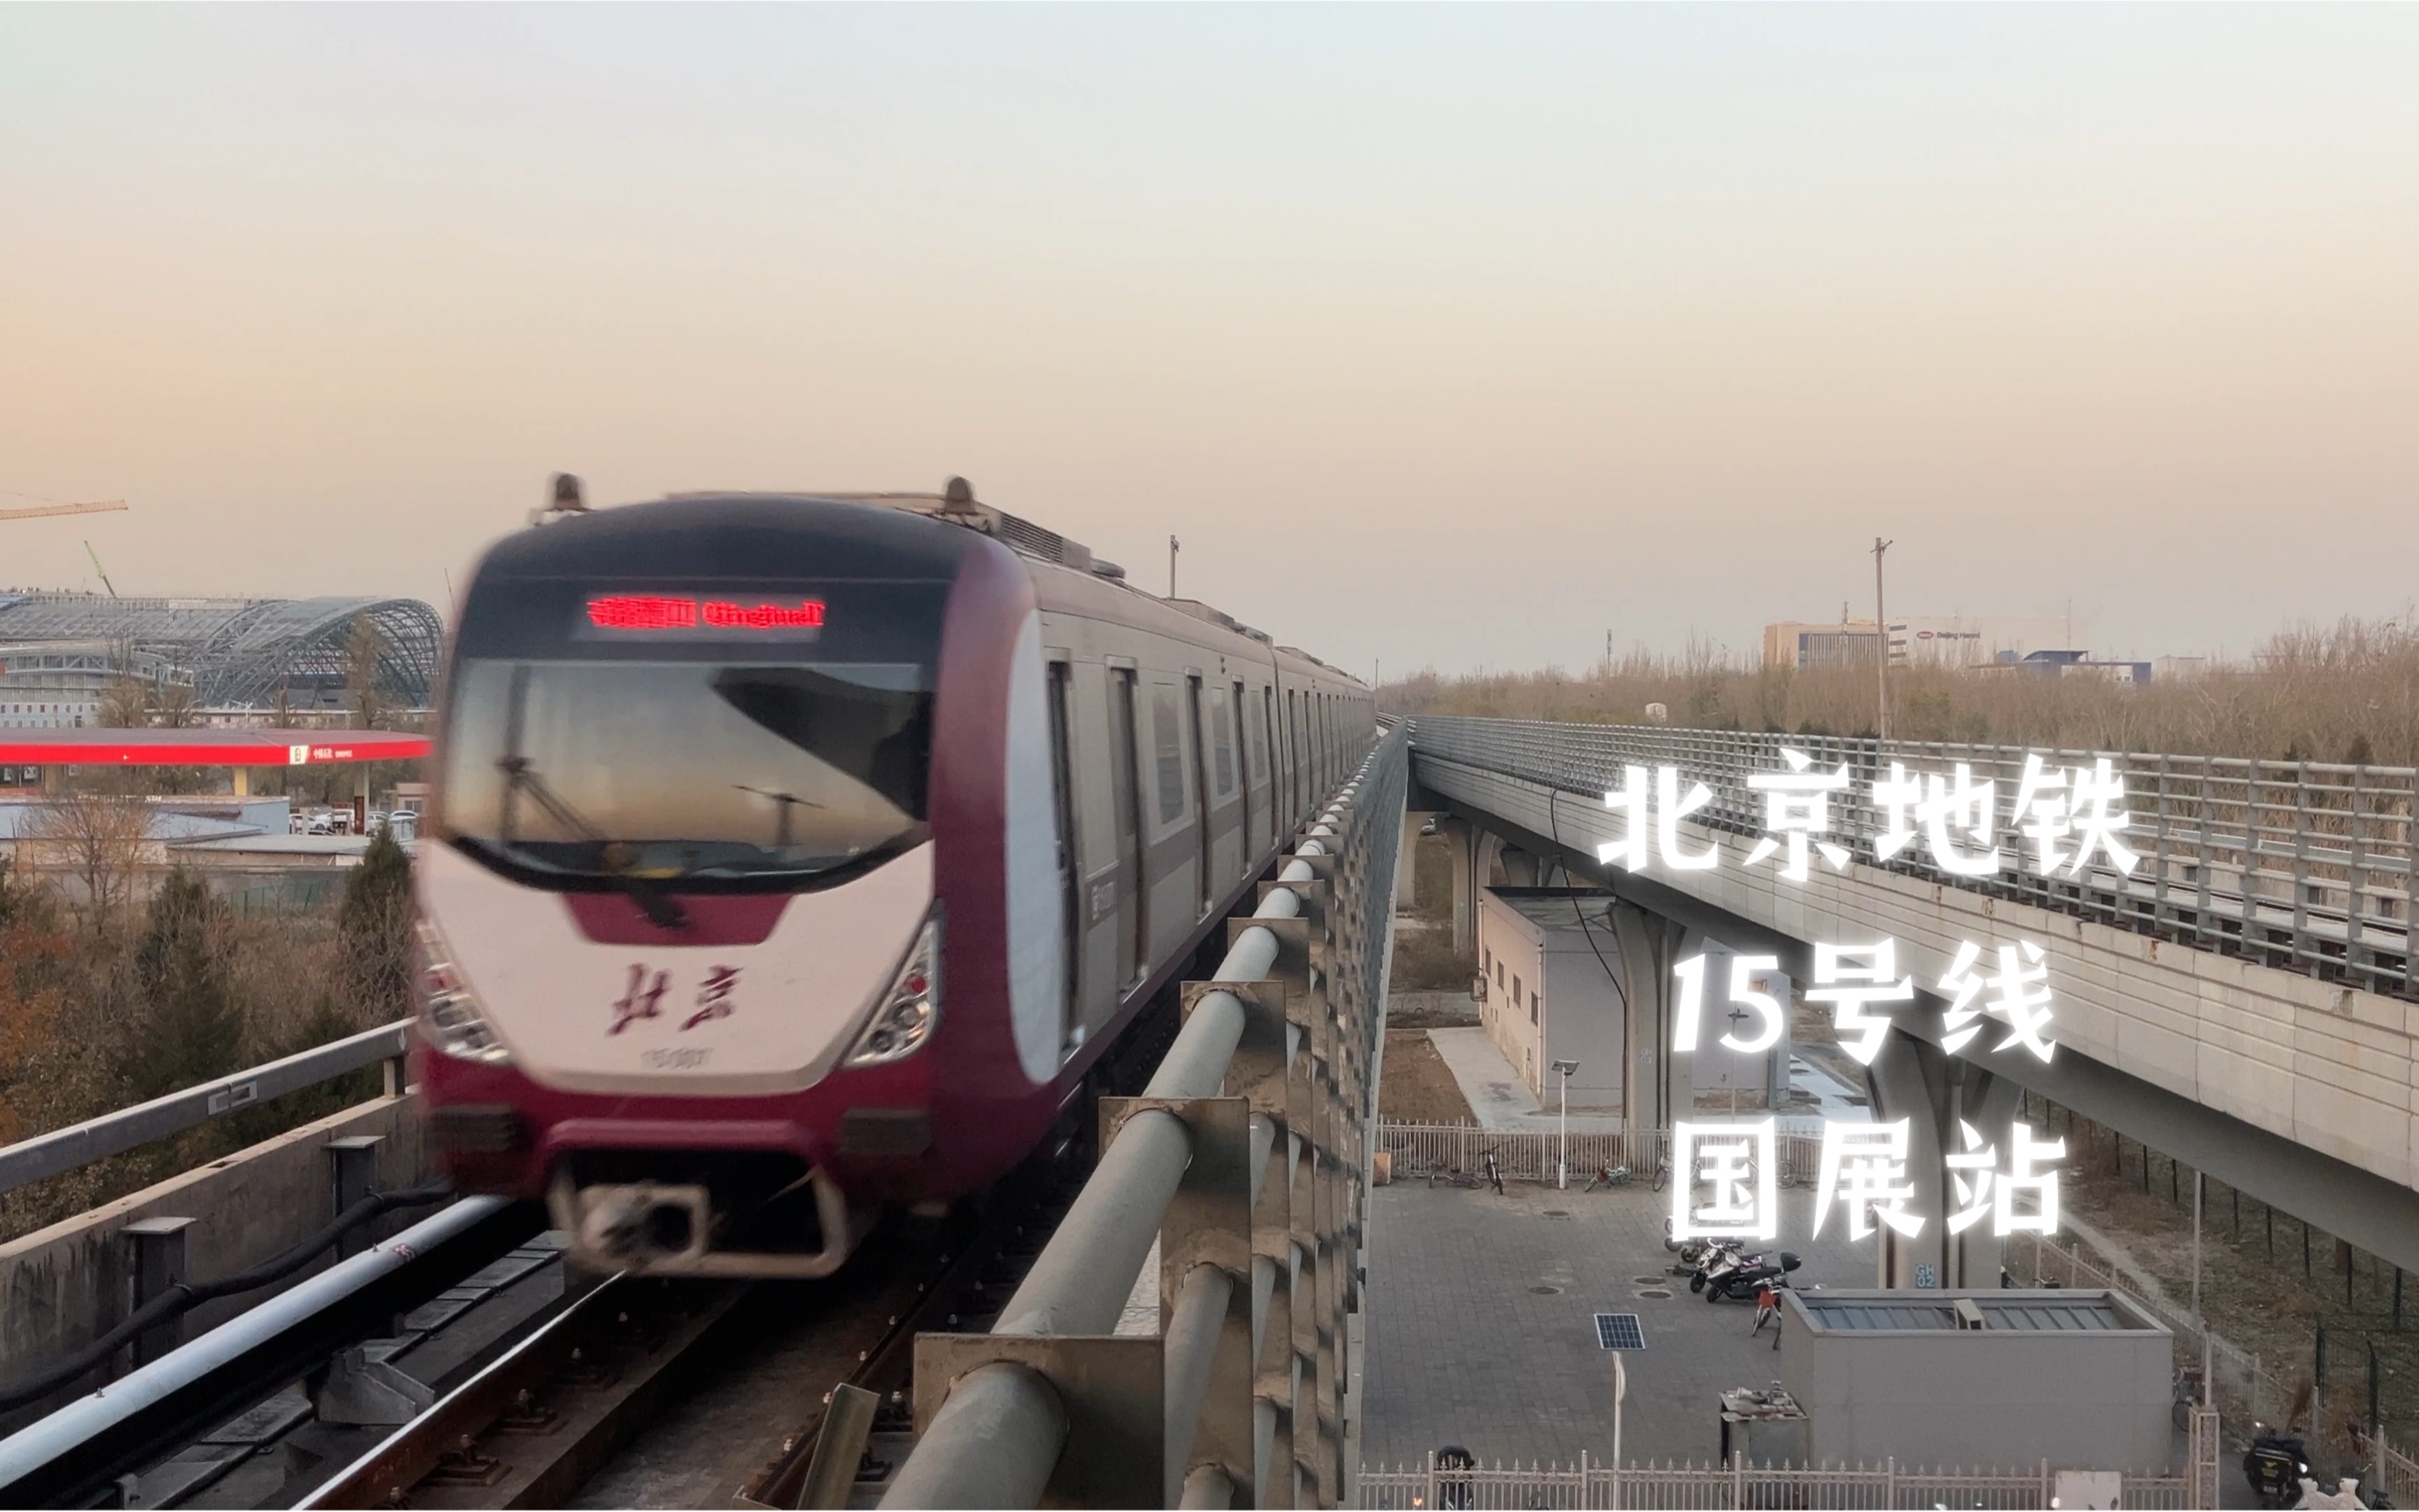 北京地铁15号线西段图片